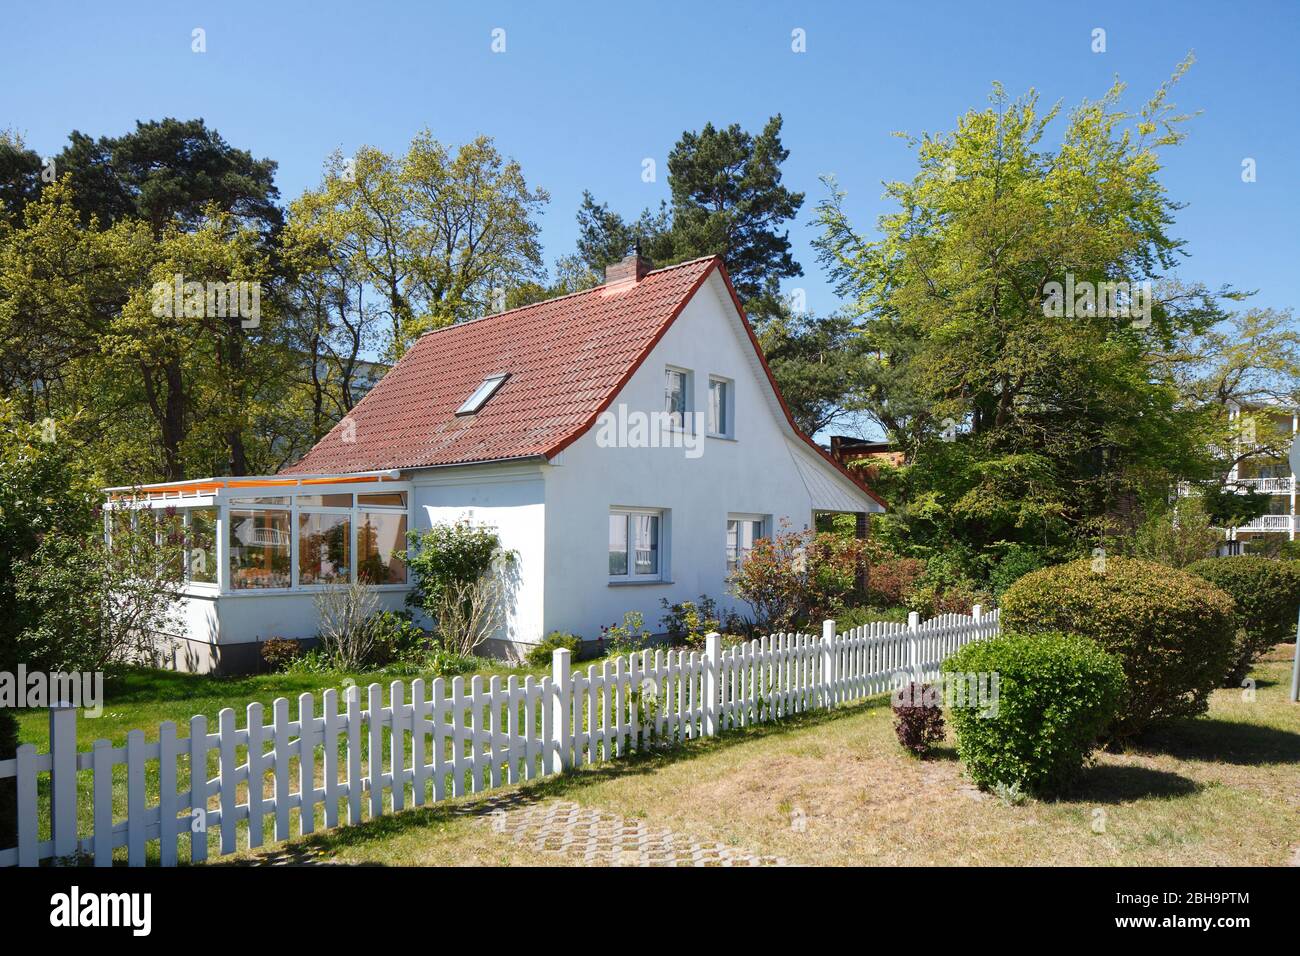 Modernes Wohngebäude, Einfamilienhaus, Binz auf Rügen, Insel Rügen, Mecklenburg-Vorpommern, Deutschland, Europa Stock Photo